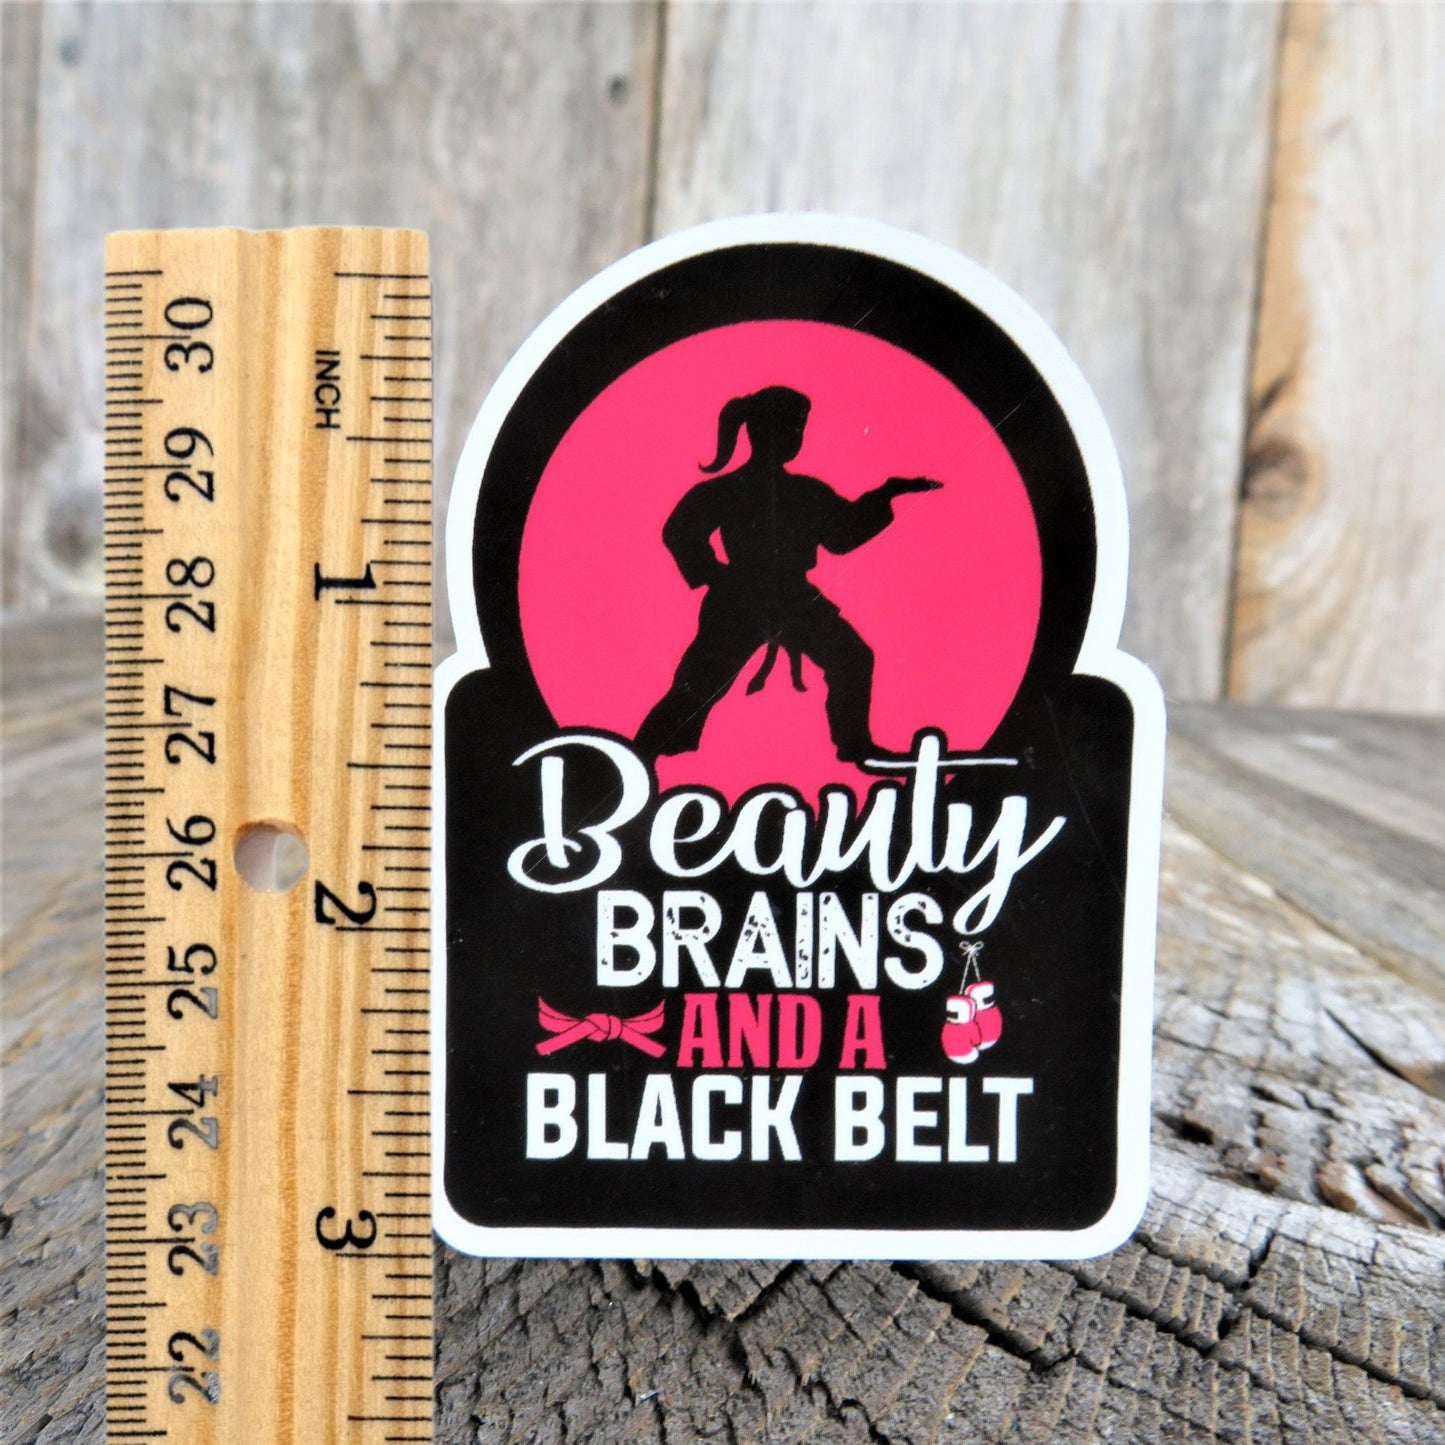 Beauty Brains Blackbelt Sticker Waterproof Girl Martial Arts Karate Jiu Jitsu Humor Funny Car Water Bottle Laptop